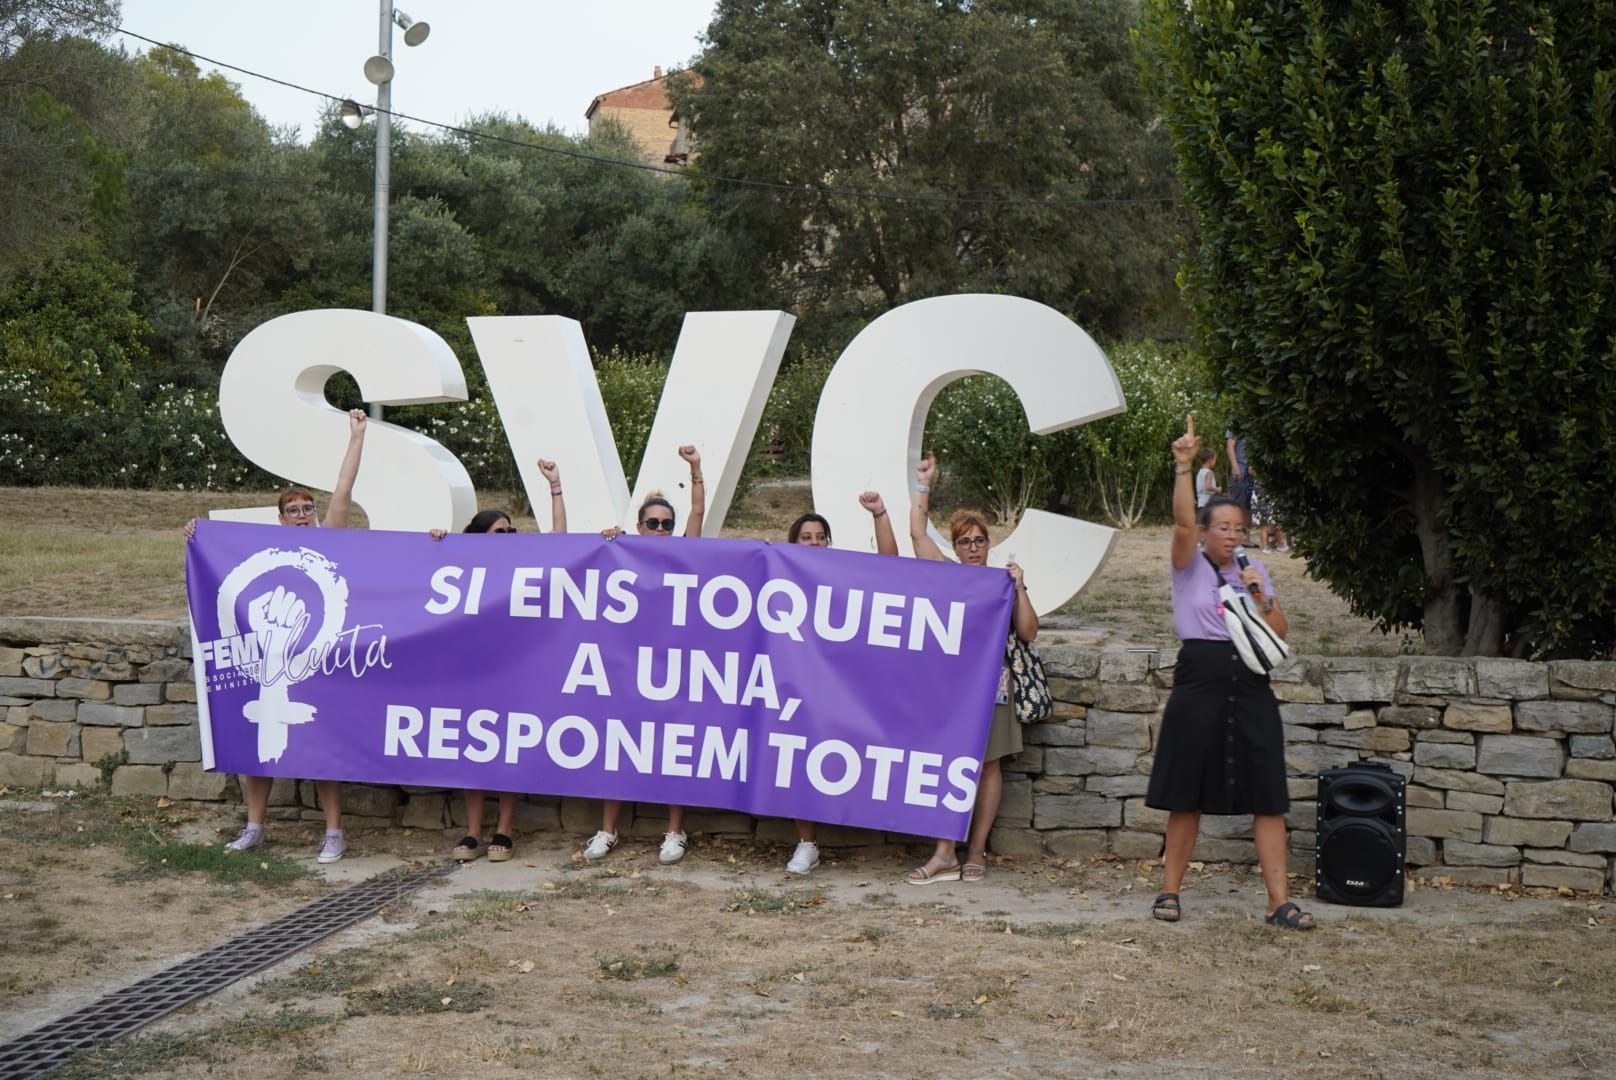 Sant Vicenç de Castellet condemna l'agressió sexual a una menor, en imatges